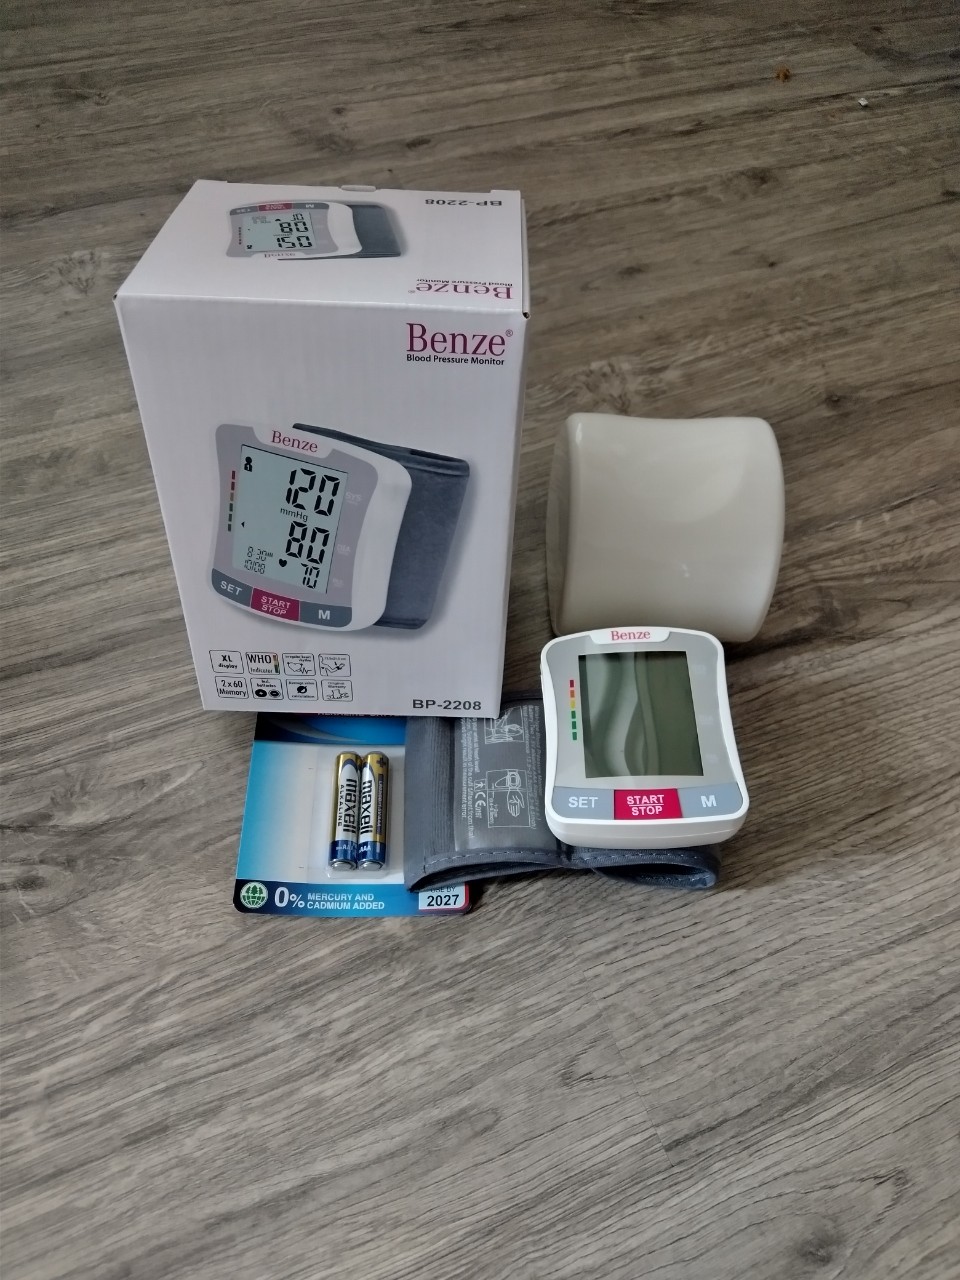 Máy đo huyết áp cổ tay Benze - xuất xứ Đức bảo hành trên 2